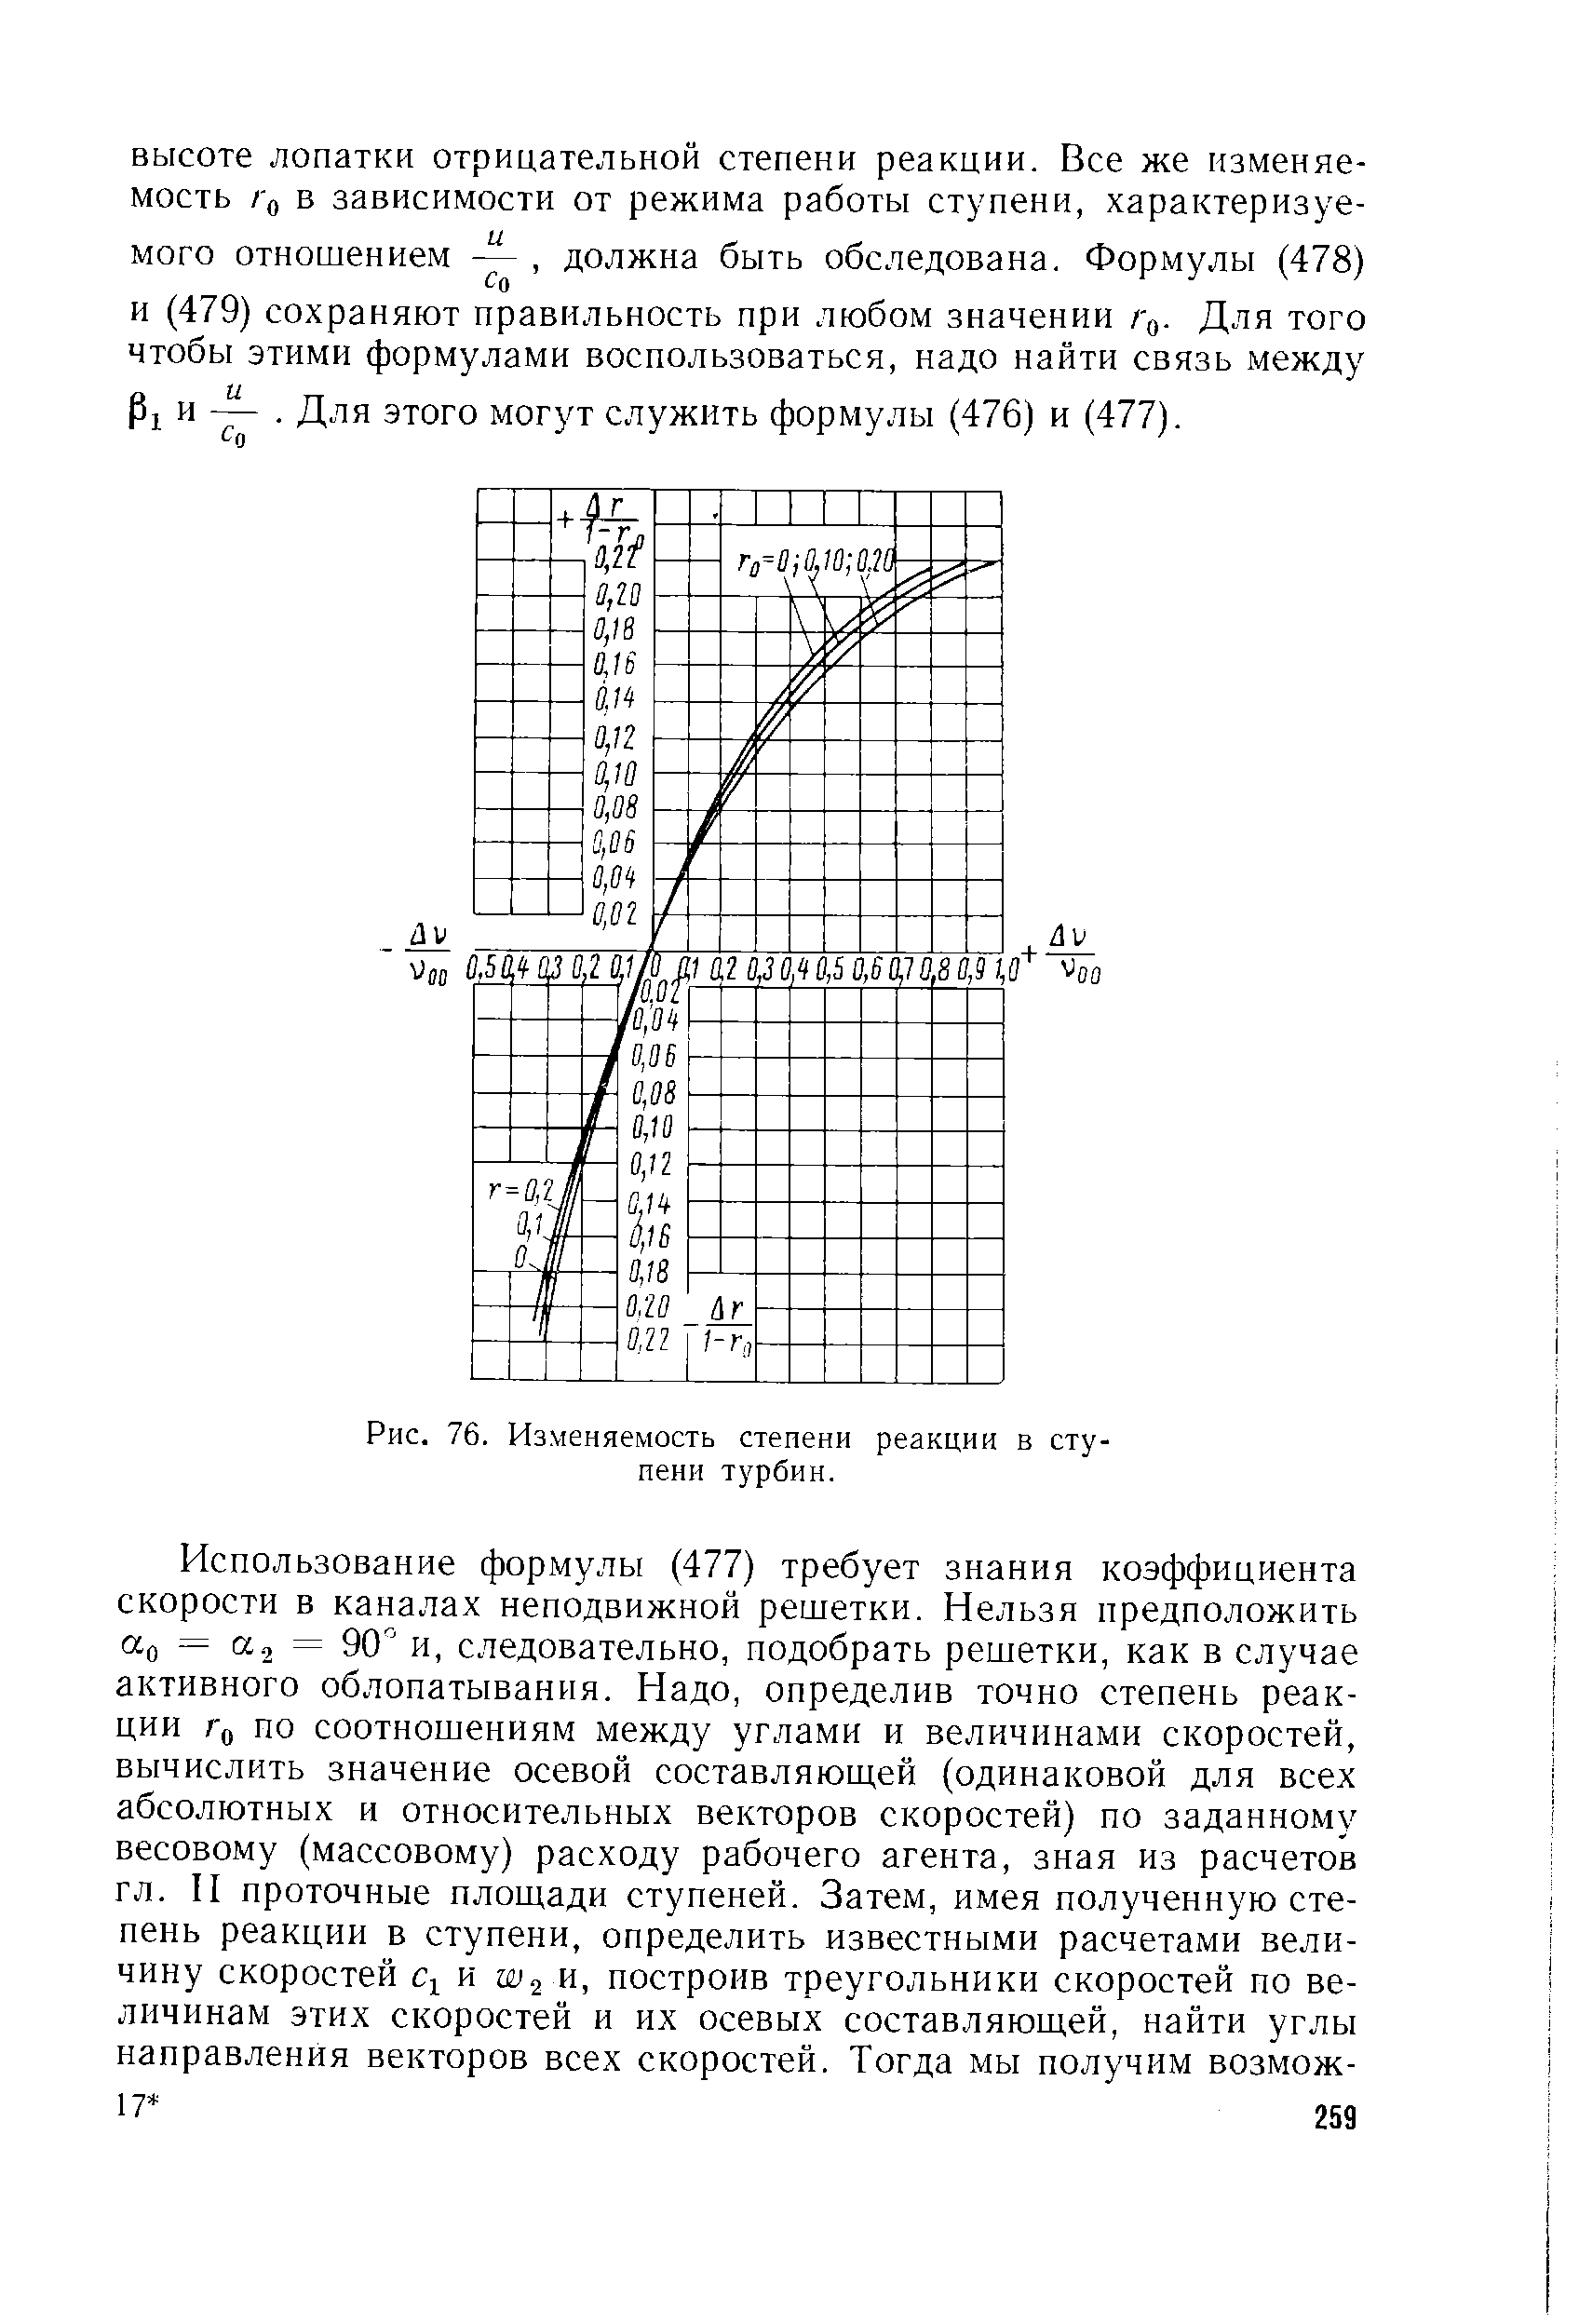 Рис. 76. <a href="/info/251001">Изменяемость степени</a> реакции в ступени турбин.
